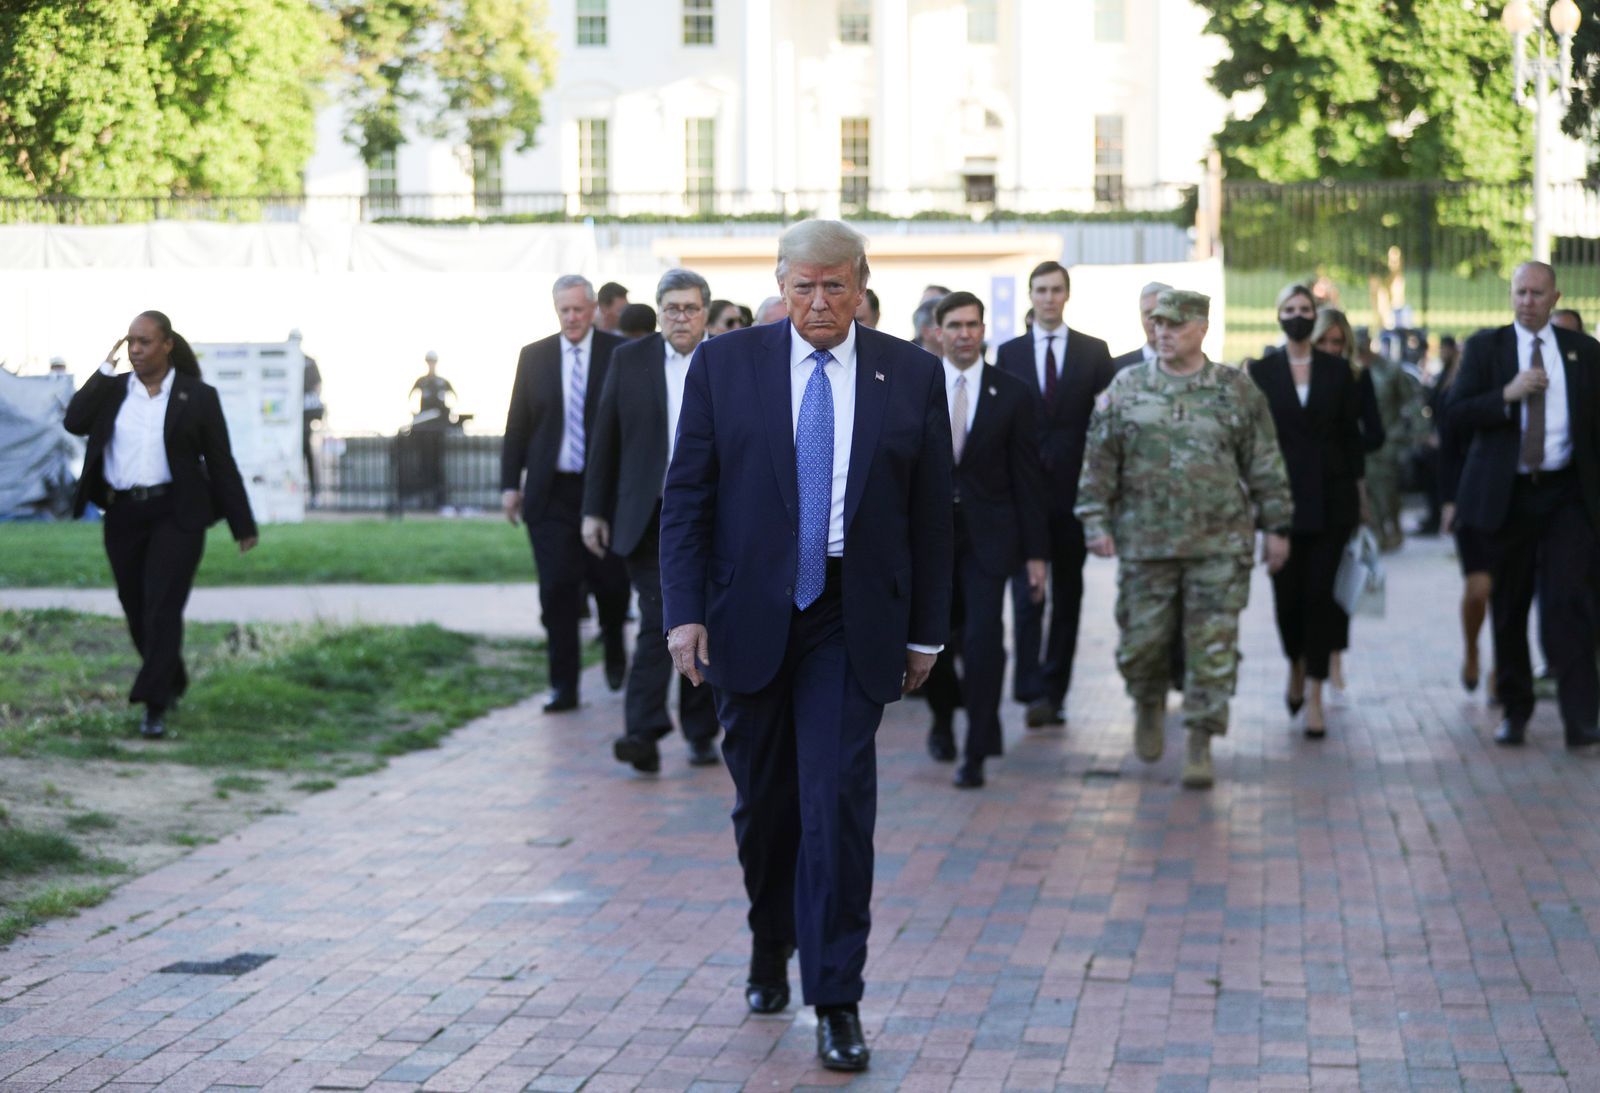 رئيس الأركان الأميركي الجنرال مارك ميلي (باللباس العسكري) وراء الرئيس دونالد ترمب خلال زيارته كنيسة قرب البيت الأبيض - 1 يونيو 2020  - REUTERS